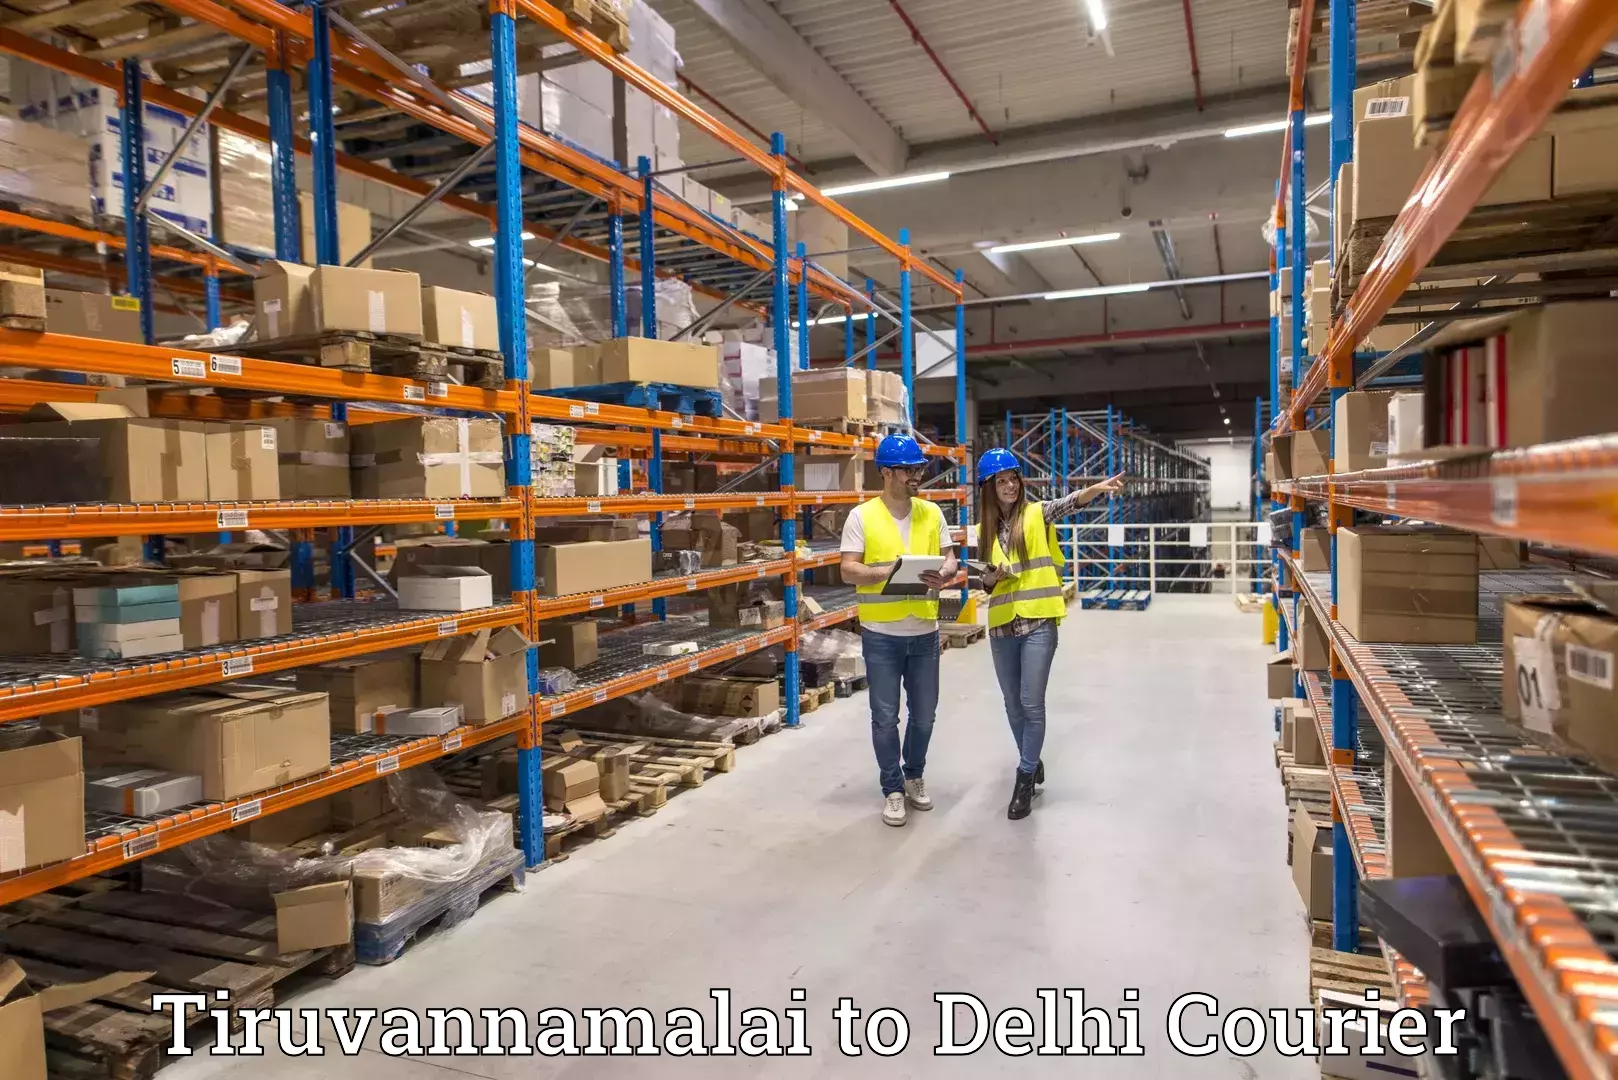 Multi-service courier options Tiruvannamalai to Jamia Millia Islamia New Delhi